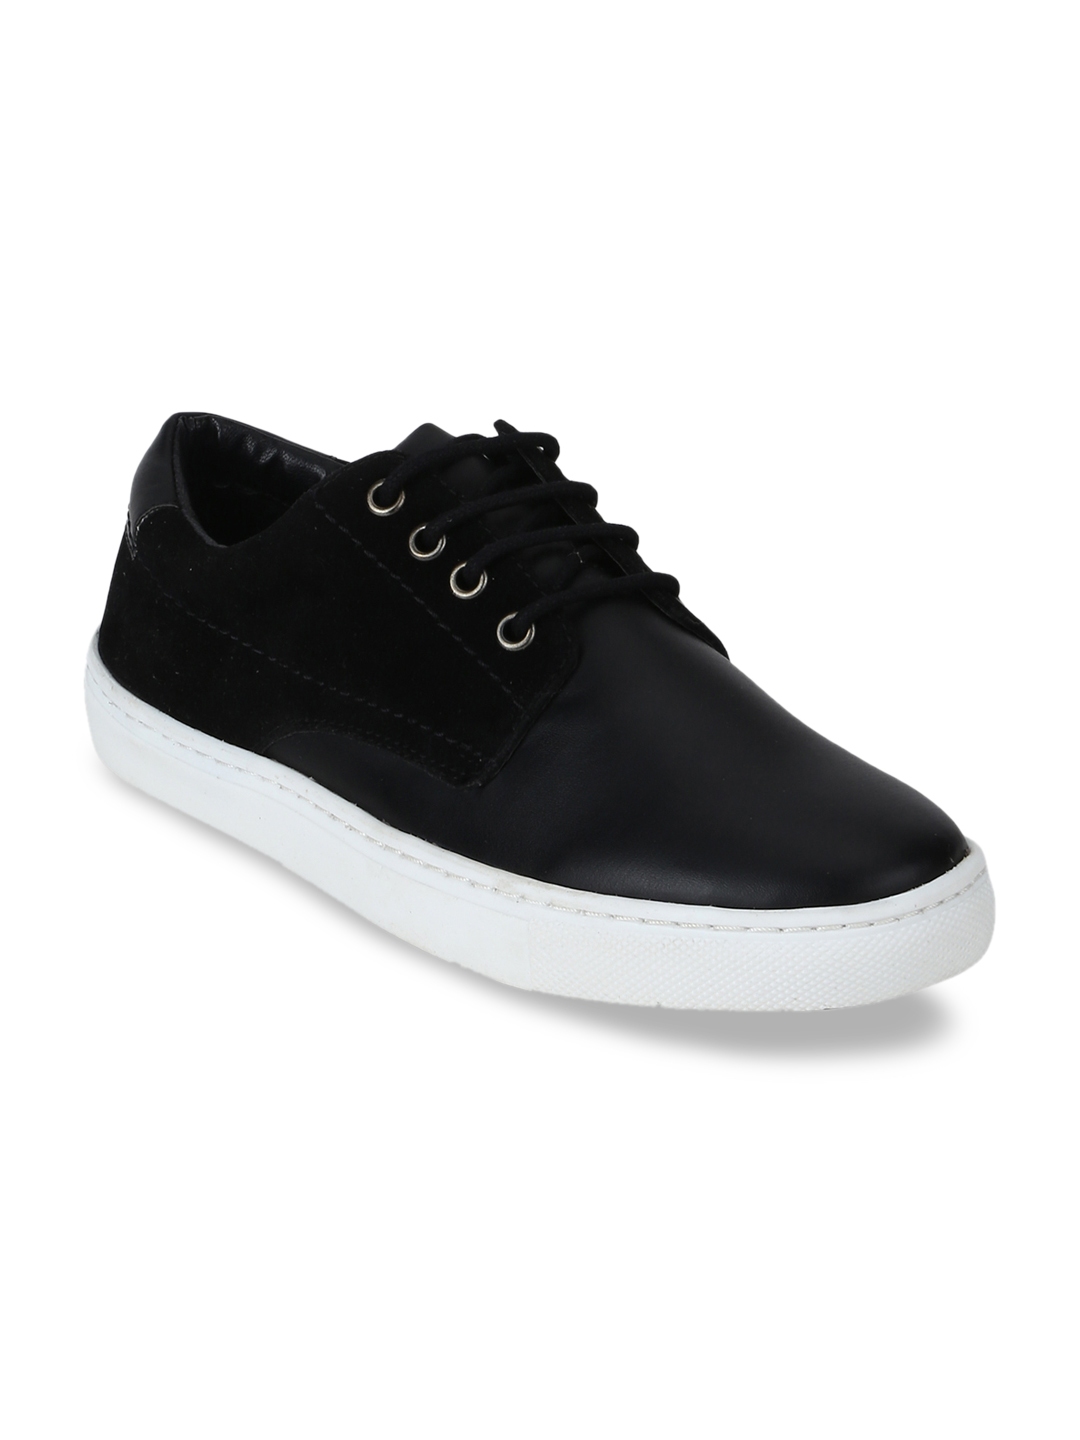 Buy Aditi Wasan Women Black Sneakers - Casual Shoes for Women 10649384 ...